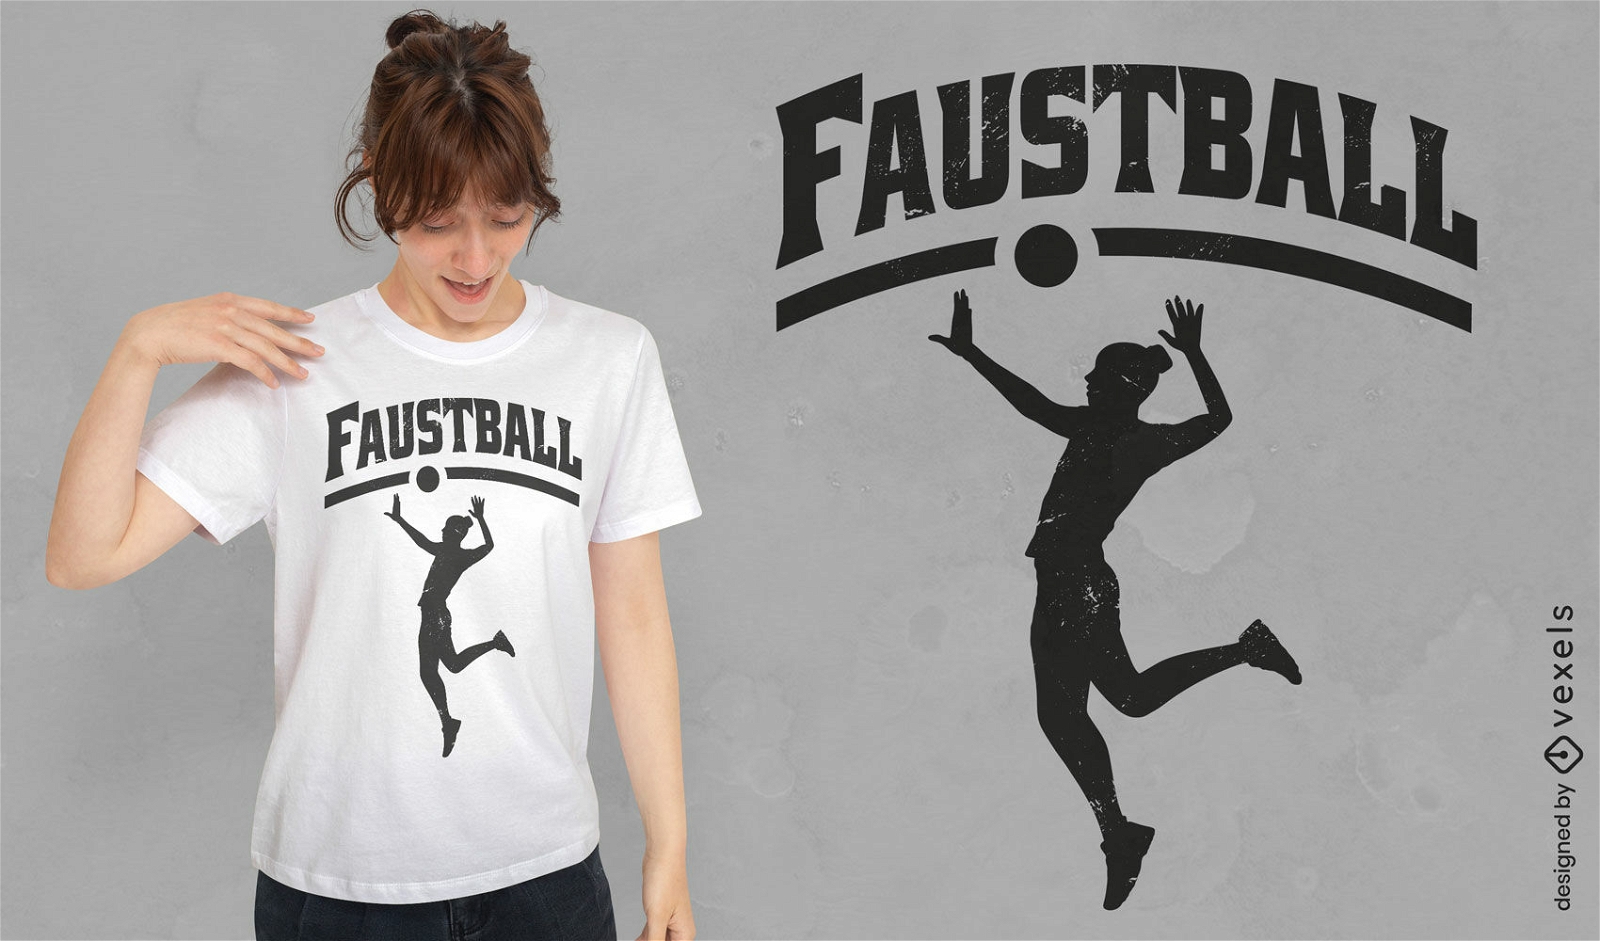 Diseño de camiseta de persona jugando faustball